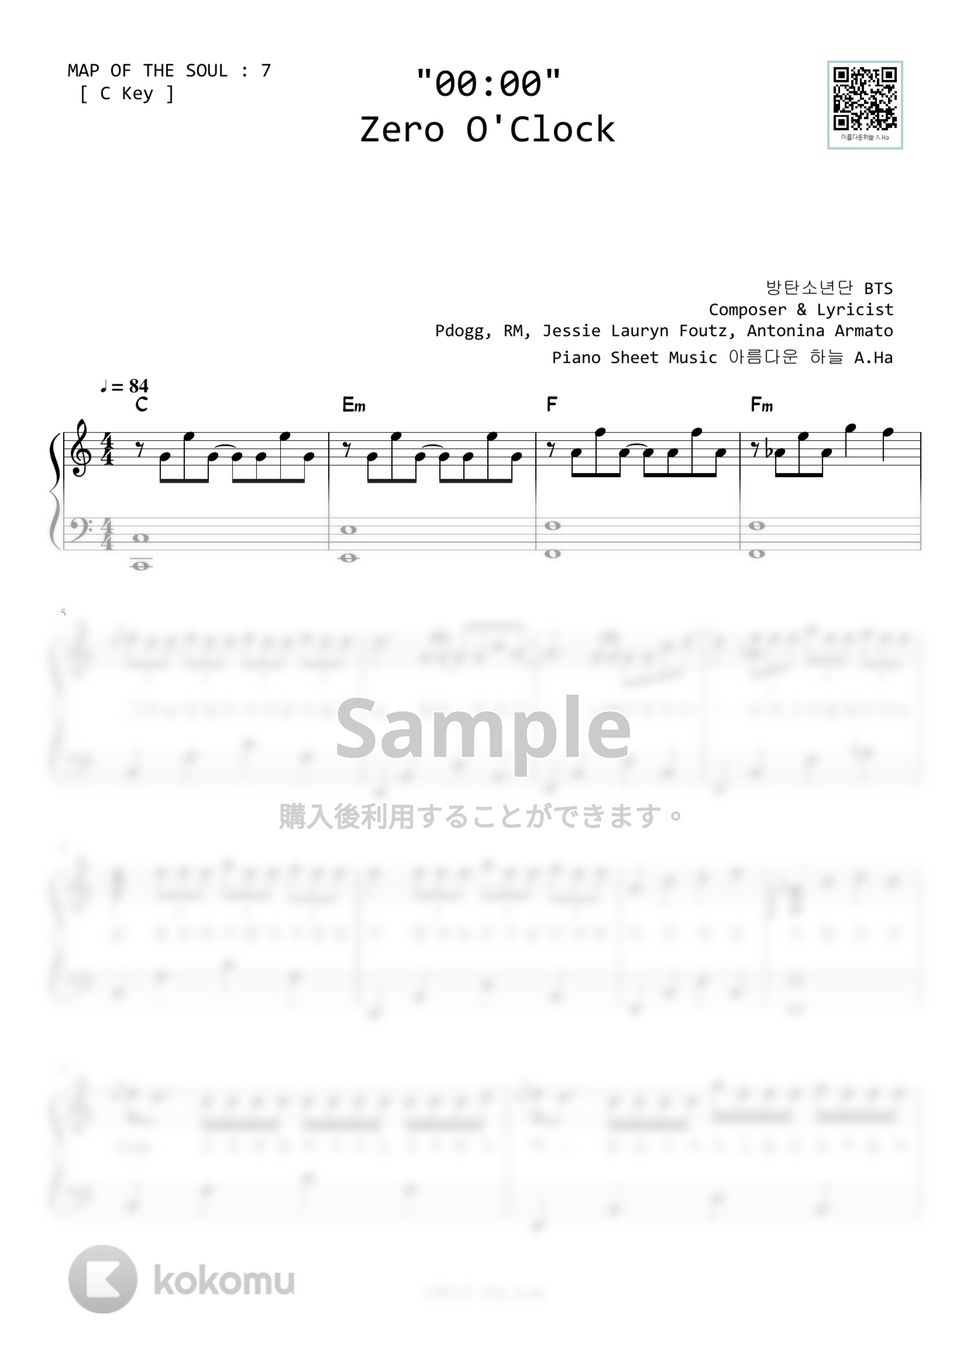 防弾少年団(BTS) - 00:00 (C Key) by A.Ha